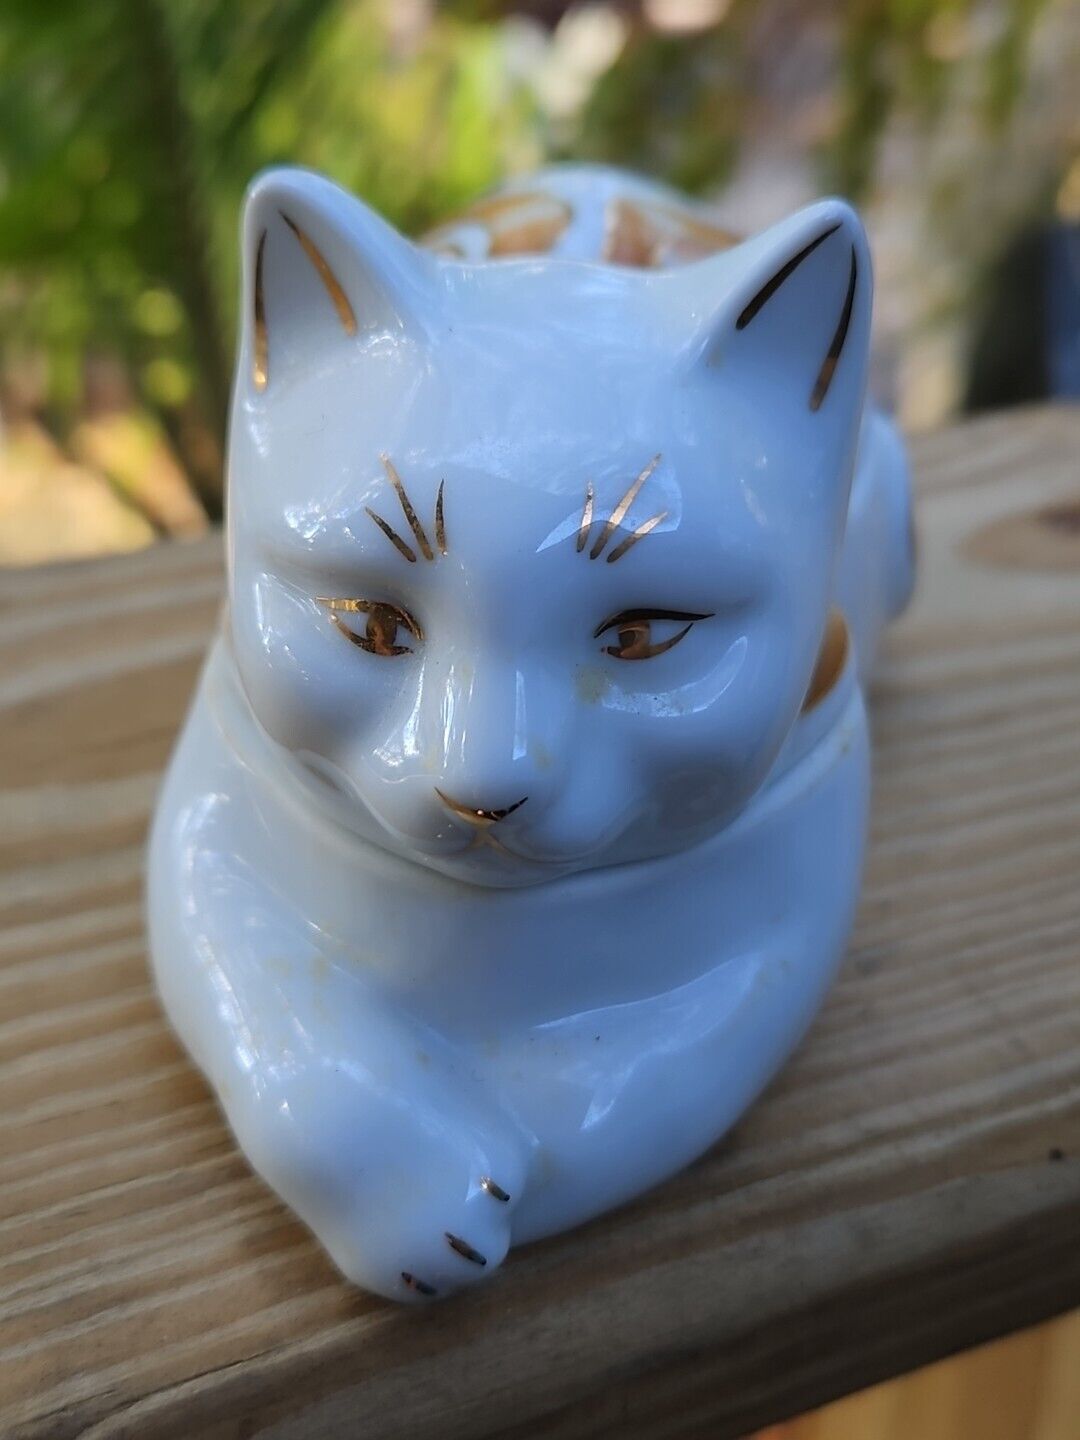 Elizabeth Arden Cat Trinket Box Candle Scented GOLD GILT Vintage Porcelain  Без бренда - фотография #5